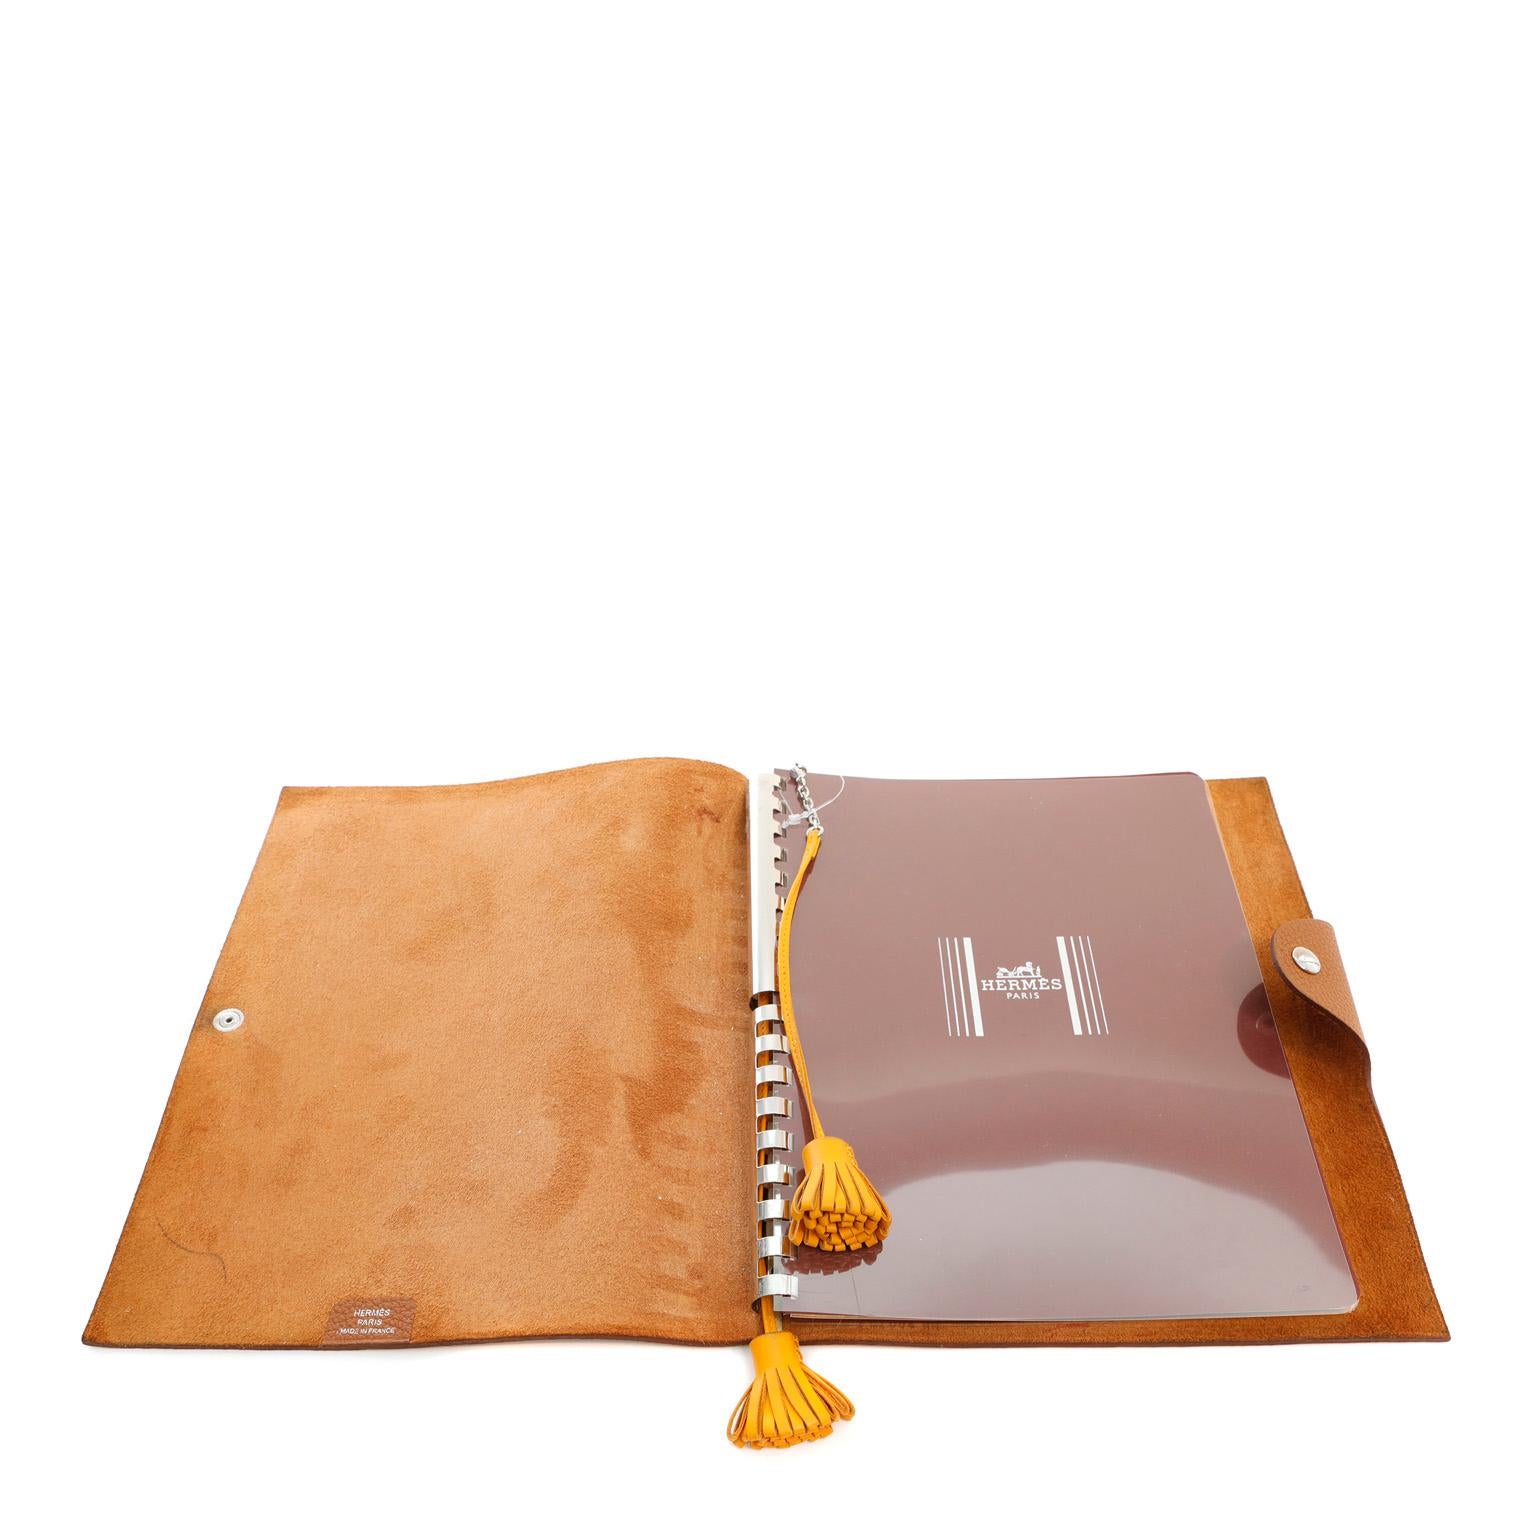 Diese authentische Hermès Brown Togo Notepad Cover ist in tadellosem Zustand; nie benutzt.  Strapazierfähiges und strukturiertes Togo-Leder mit Druckknopfverschluss, elegant und gediegen in Goldbraun. 9